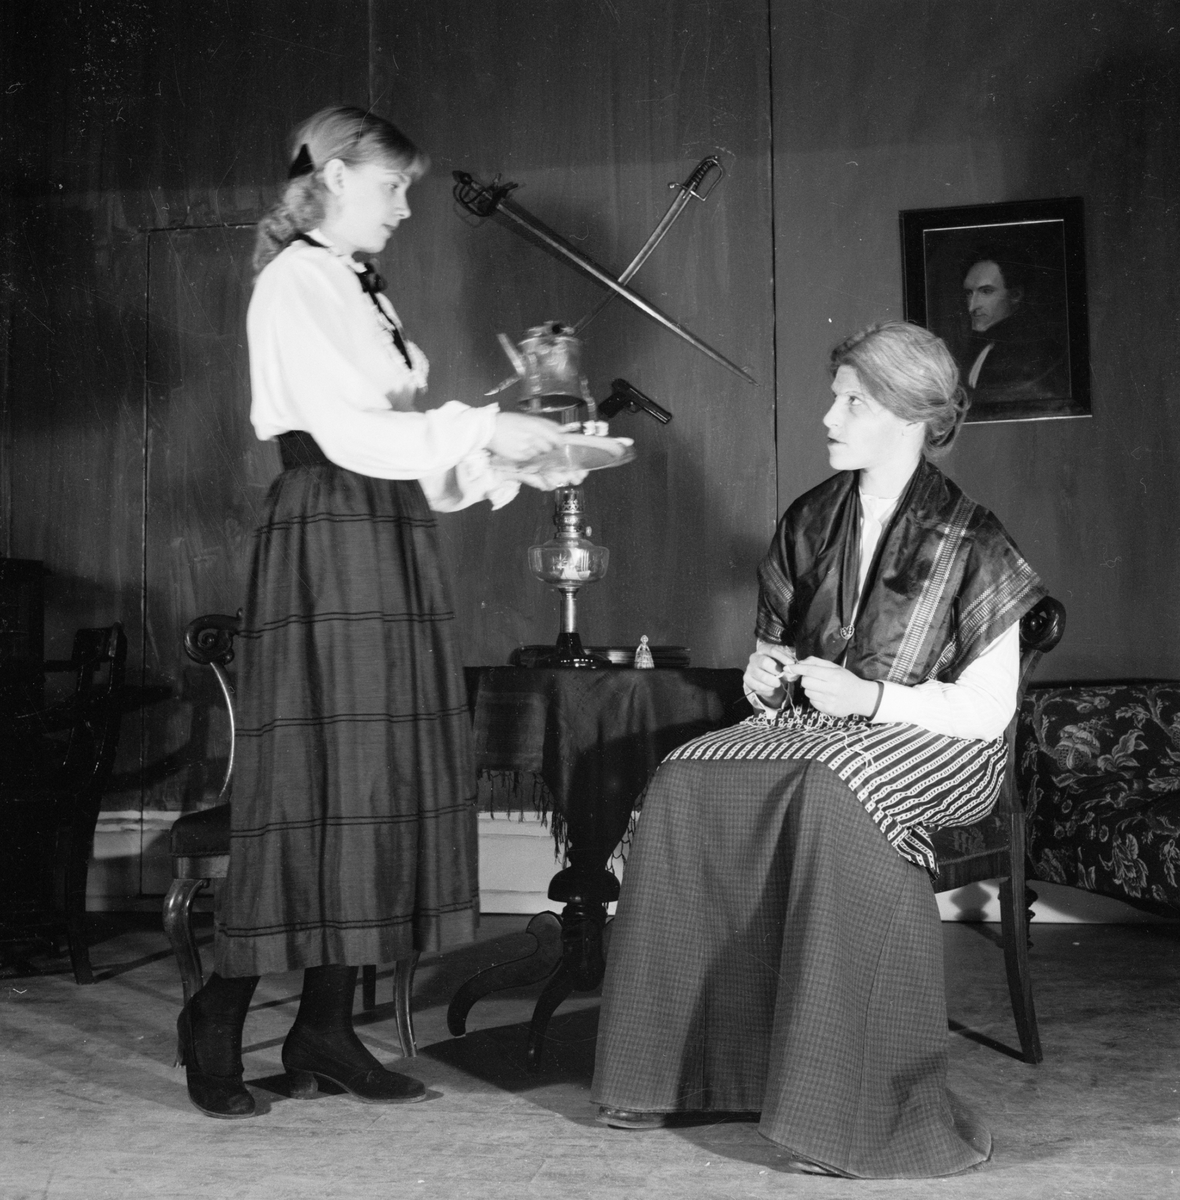 Folkskoleseminariet, "Fadren", Uppsala 1949